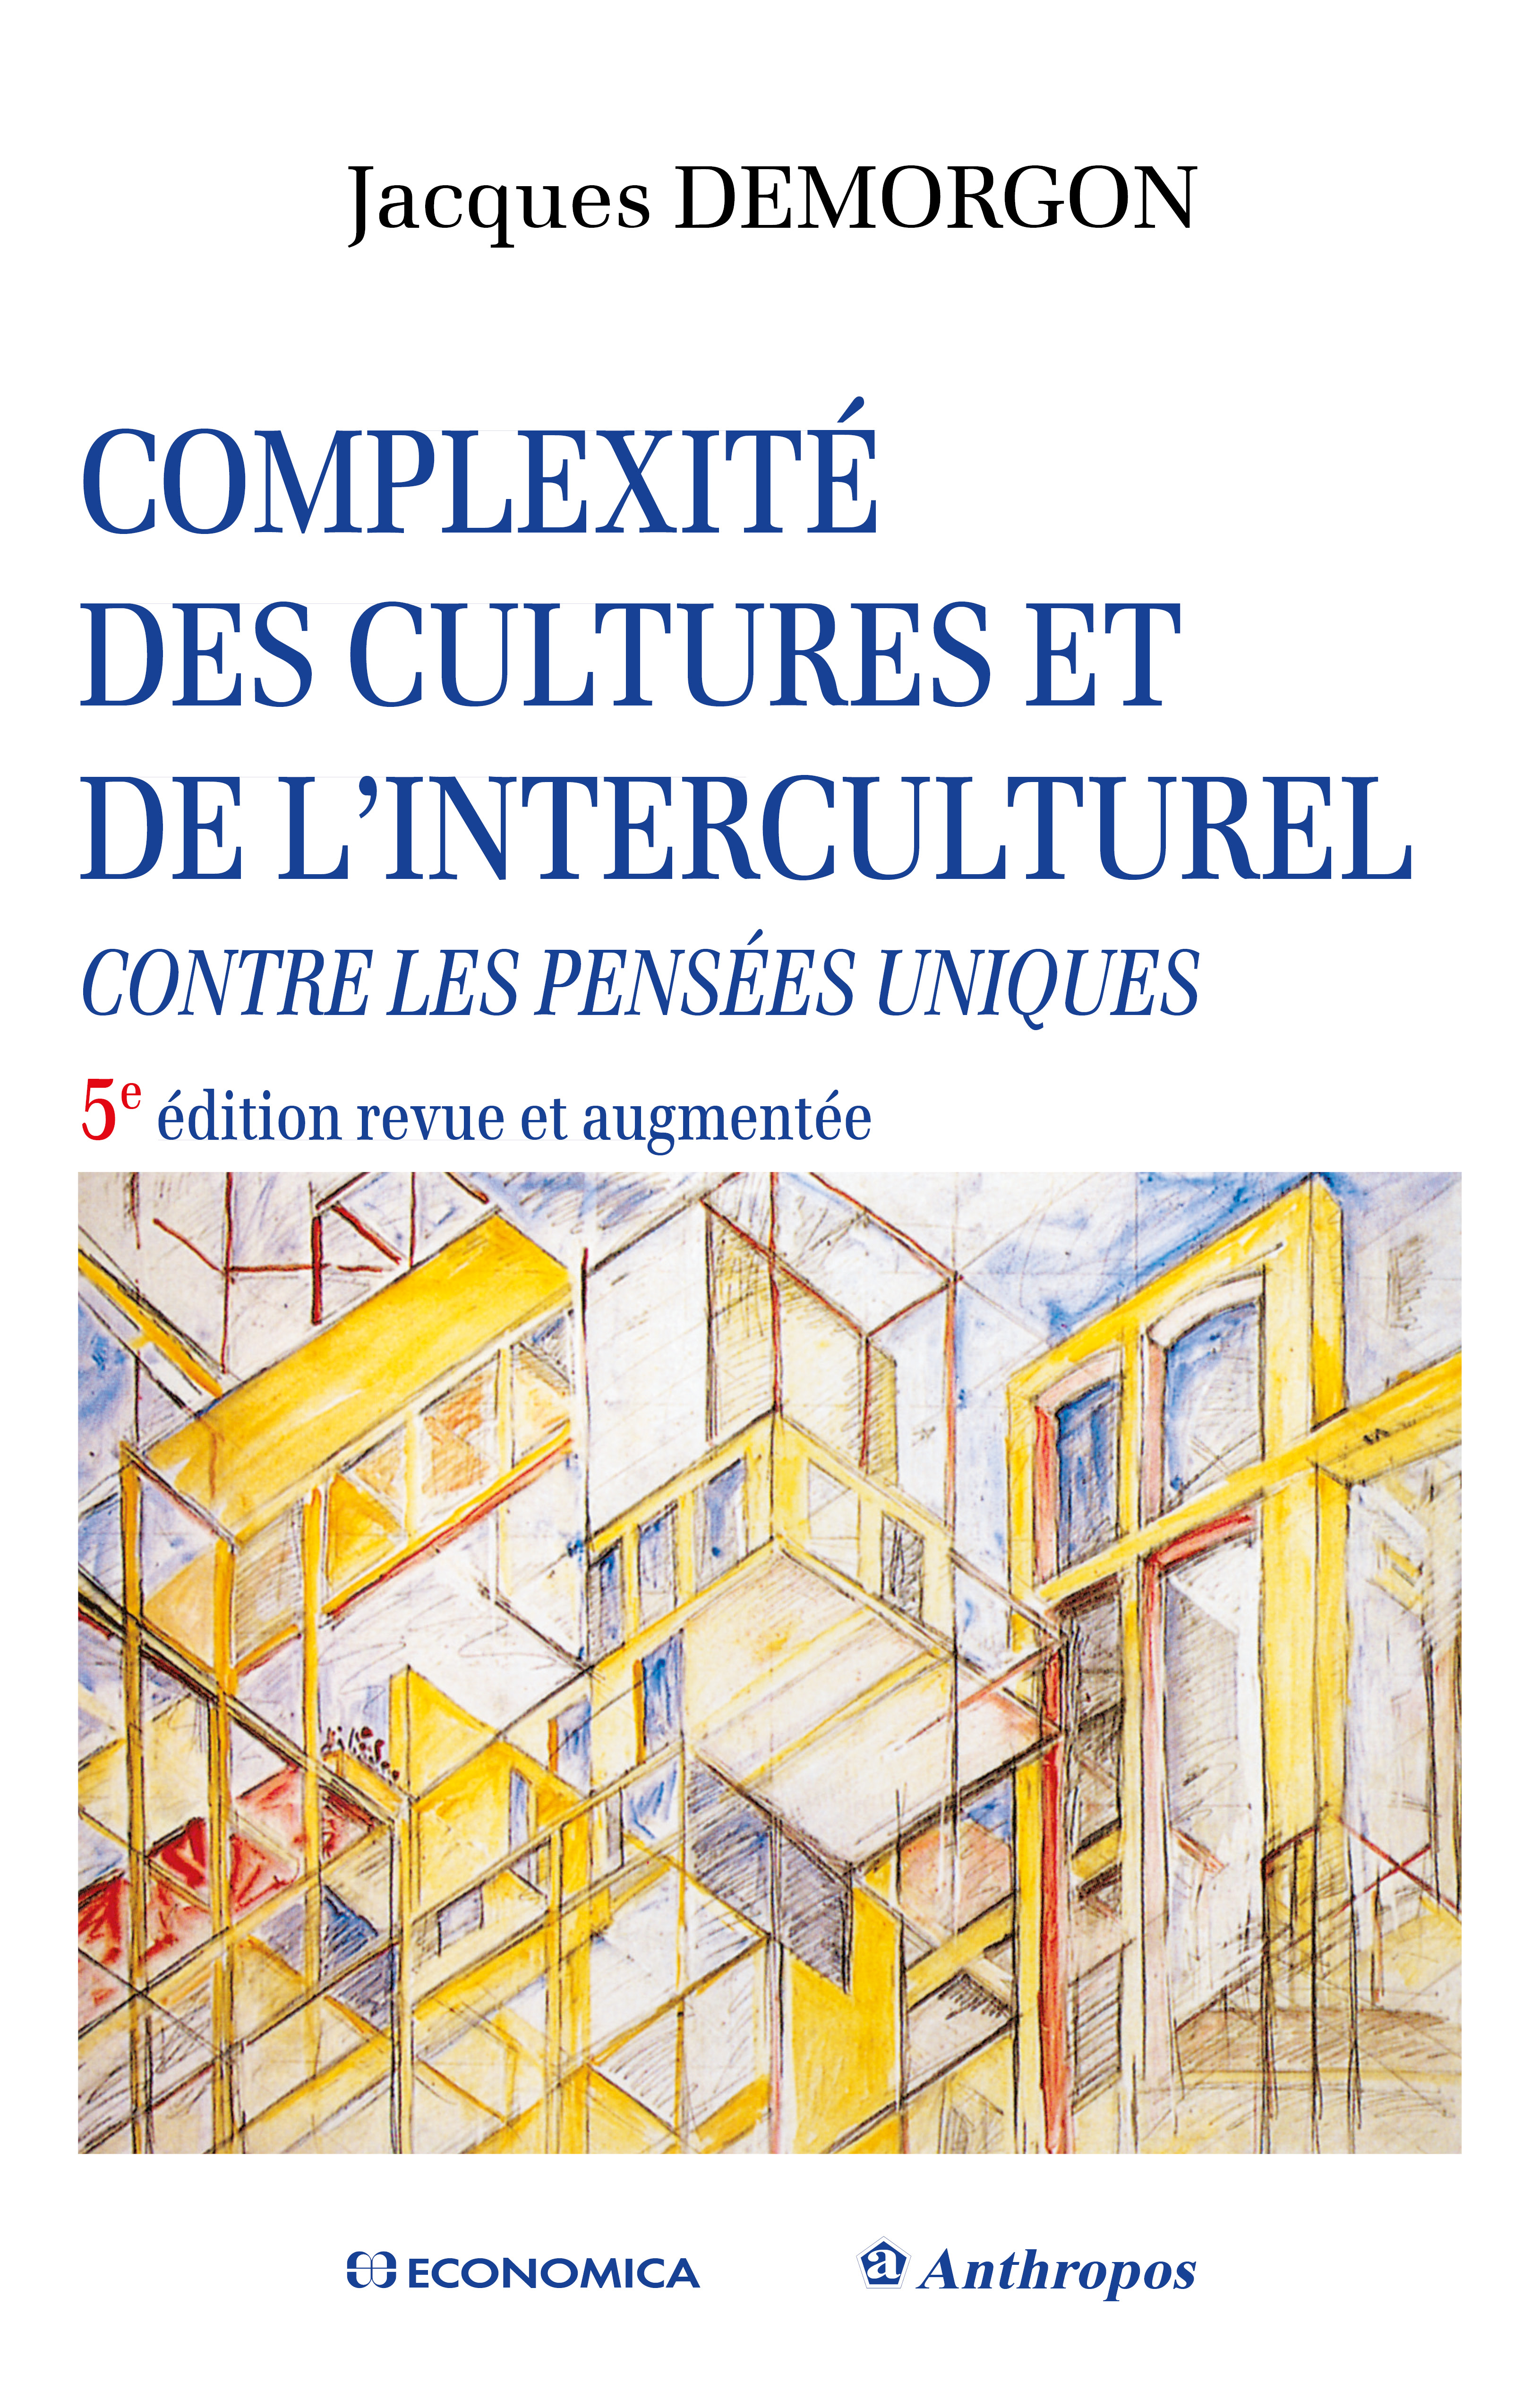 Complexité des cultures et de l’interculturel. Contre les pensées uniques. 5e édition. Economica